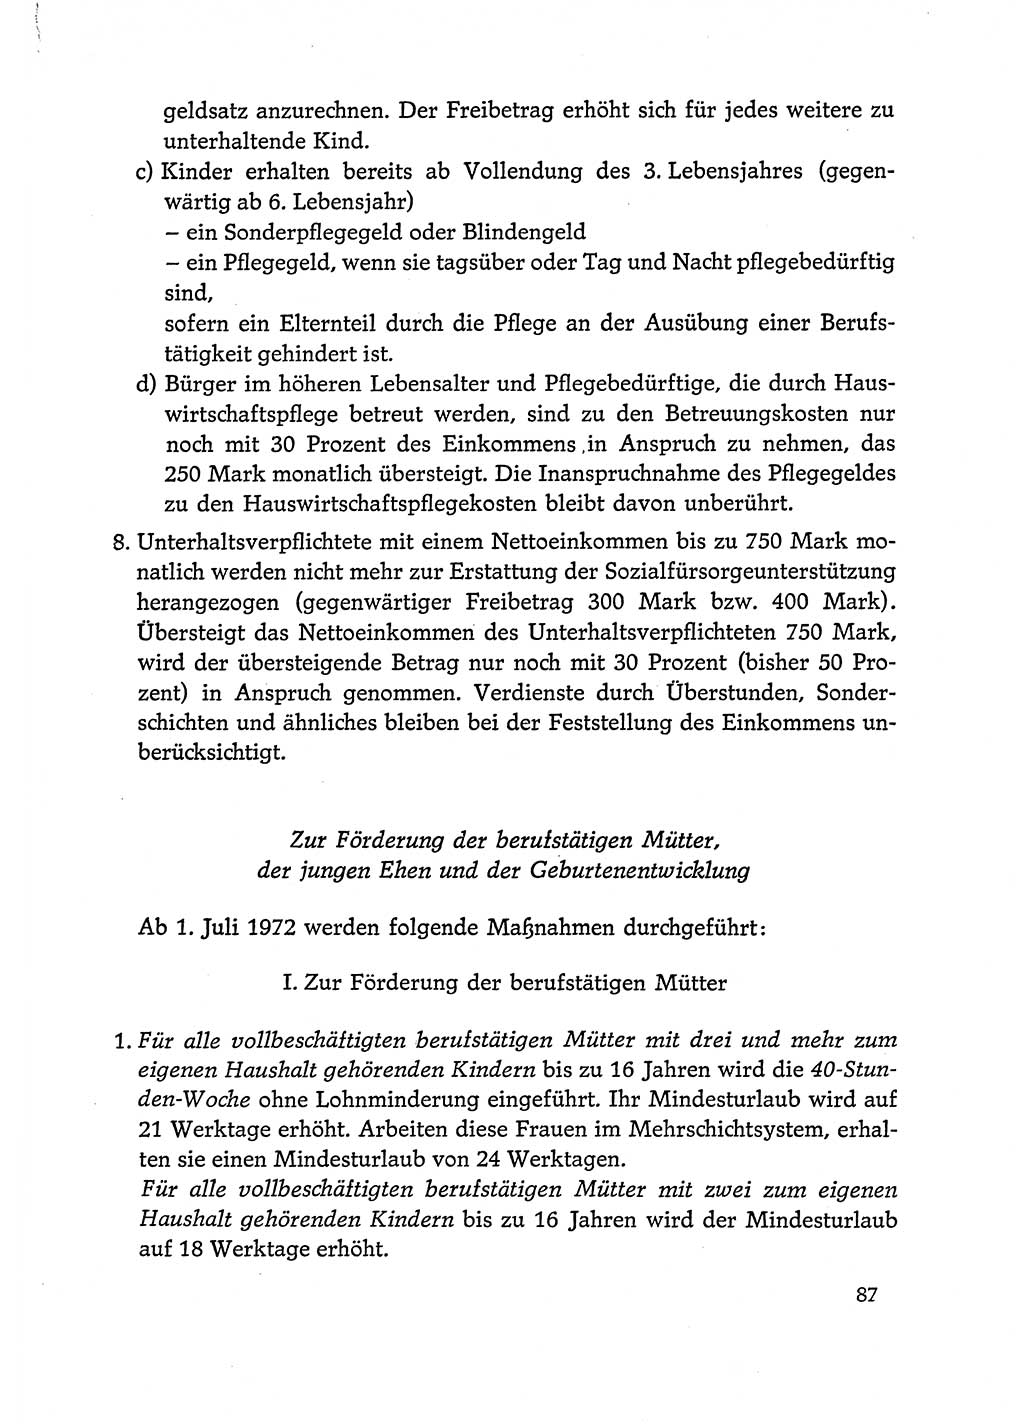 Dokumente der Sozialistischen Einheitspartei Deutschlands (SED) [Deutsche Demokratische Republik (DDR)] 1972-1973, Seite 87 (Dok. SED DDR 1972-1973, S. 87)